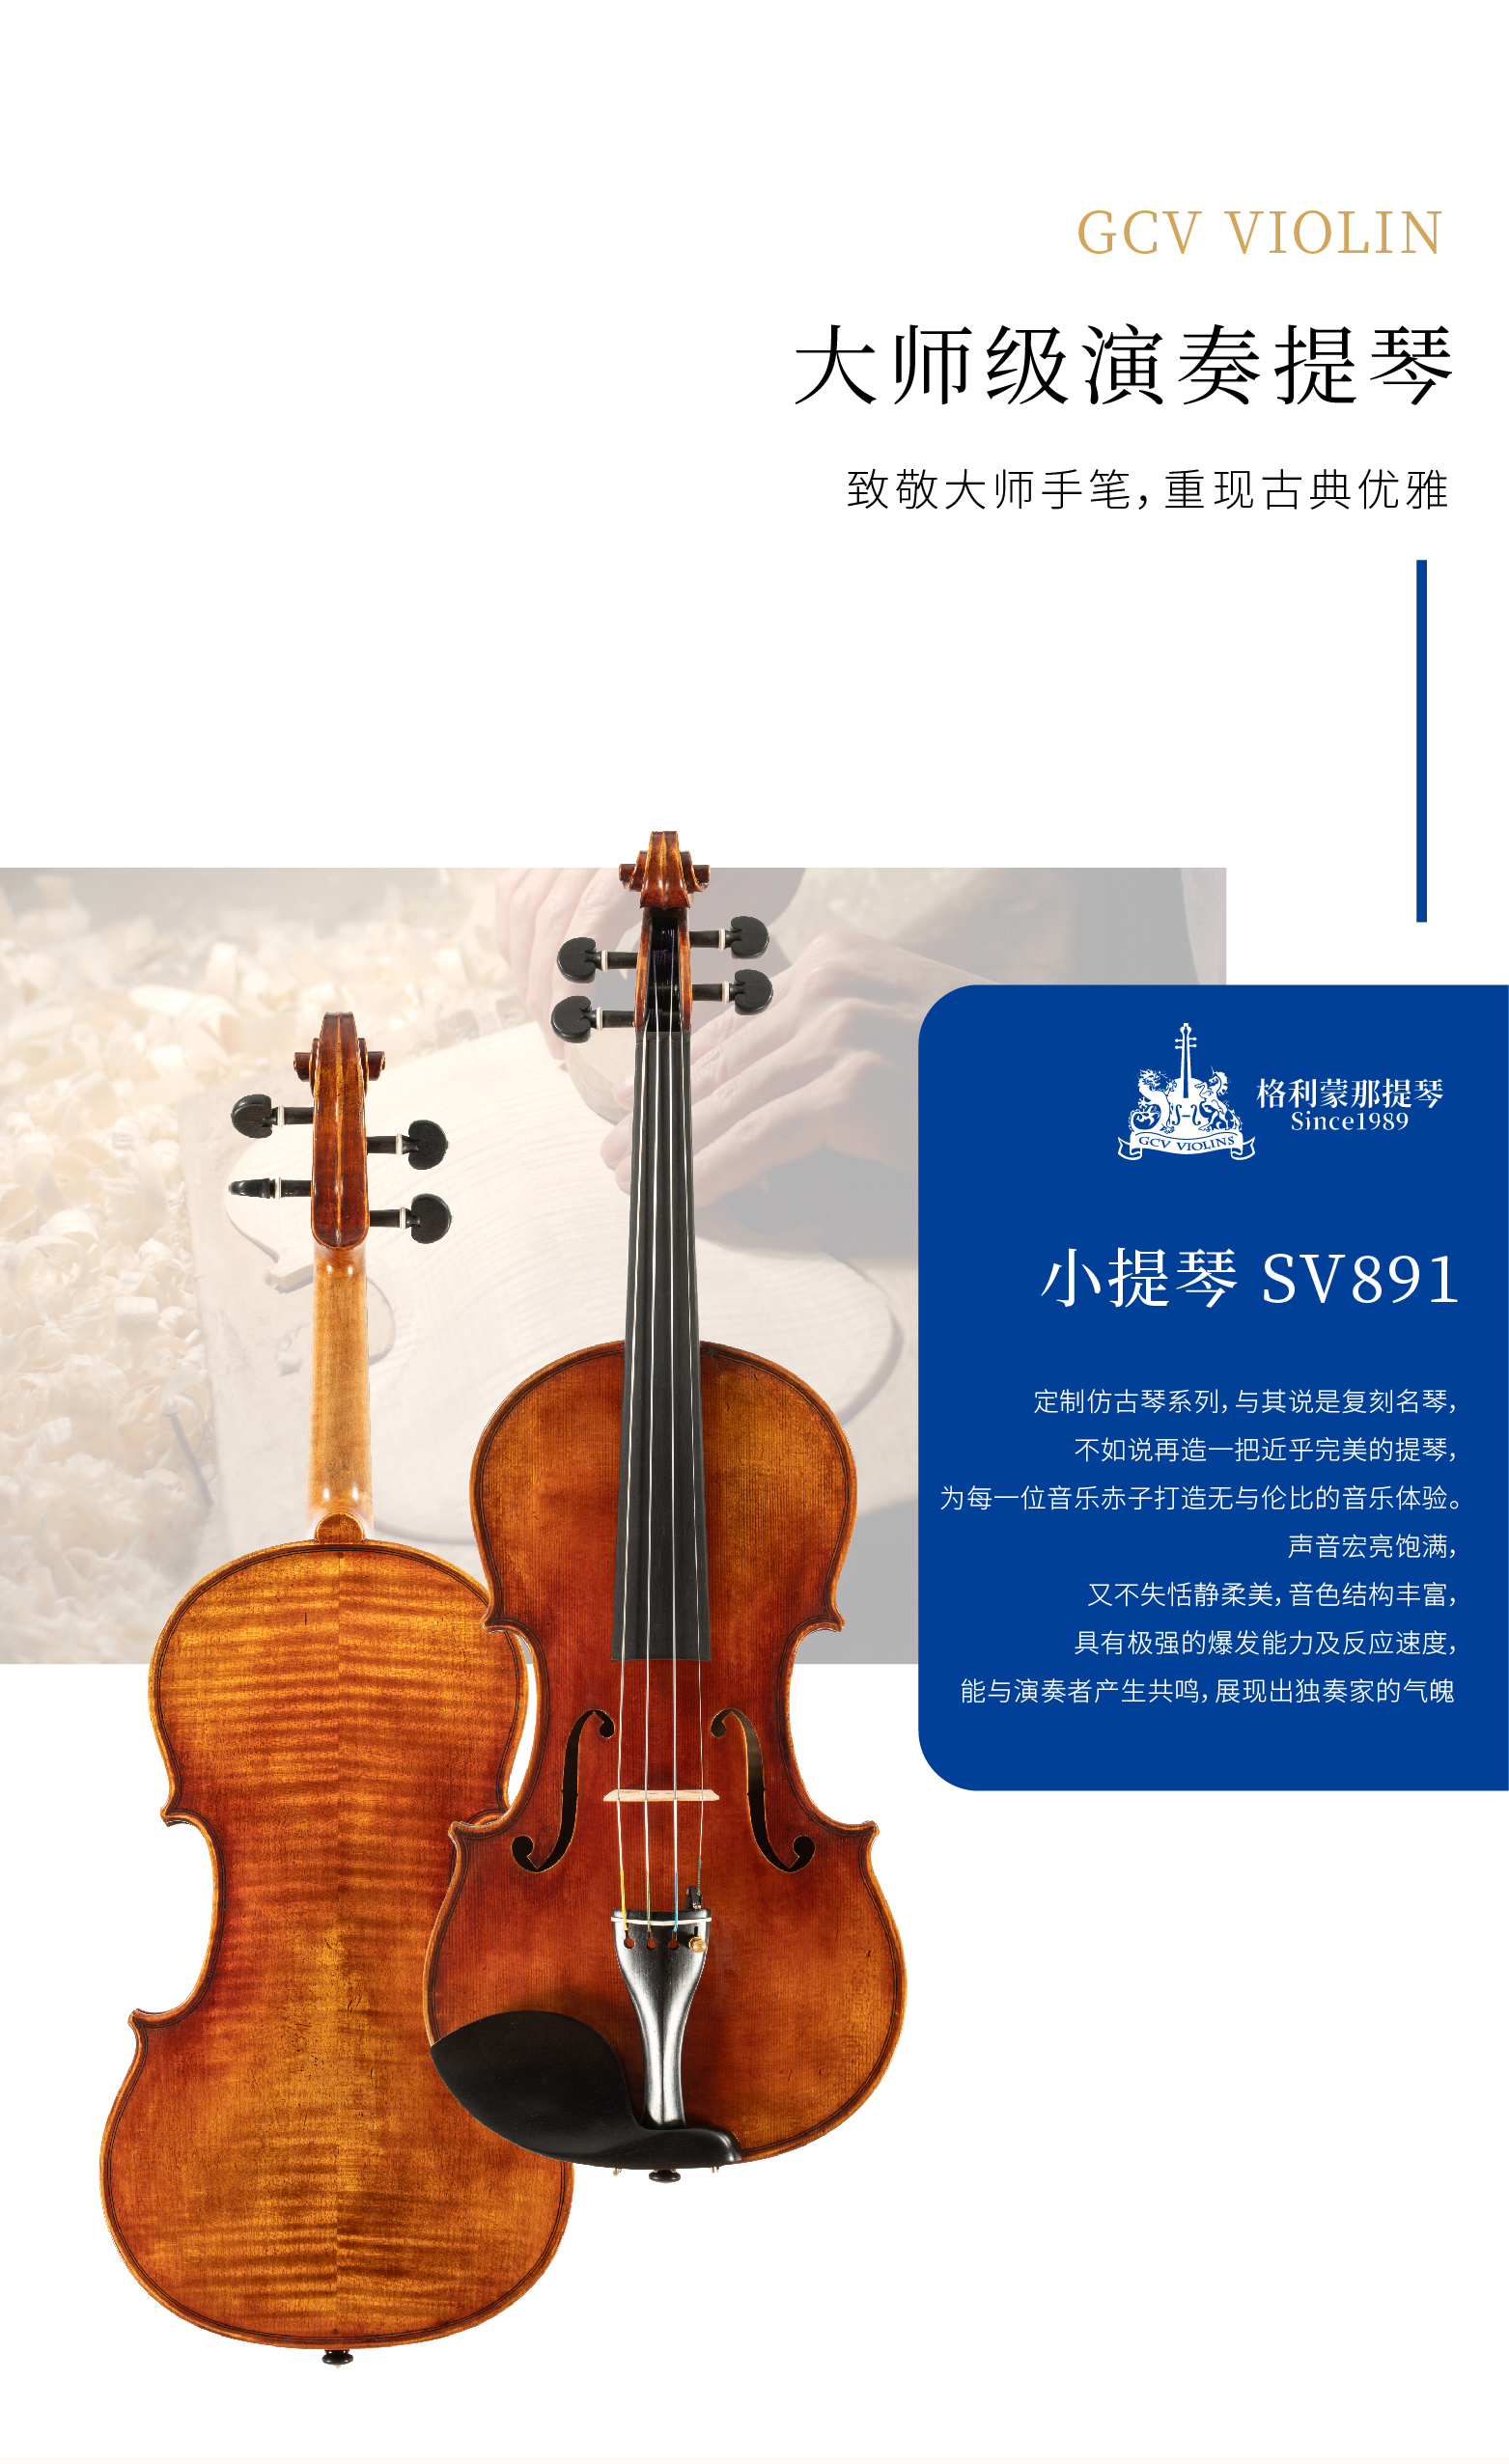 熙珑乐器专营店-详情-v1-2_SV891小提琴_复制_PC-副本-2_02.jpg